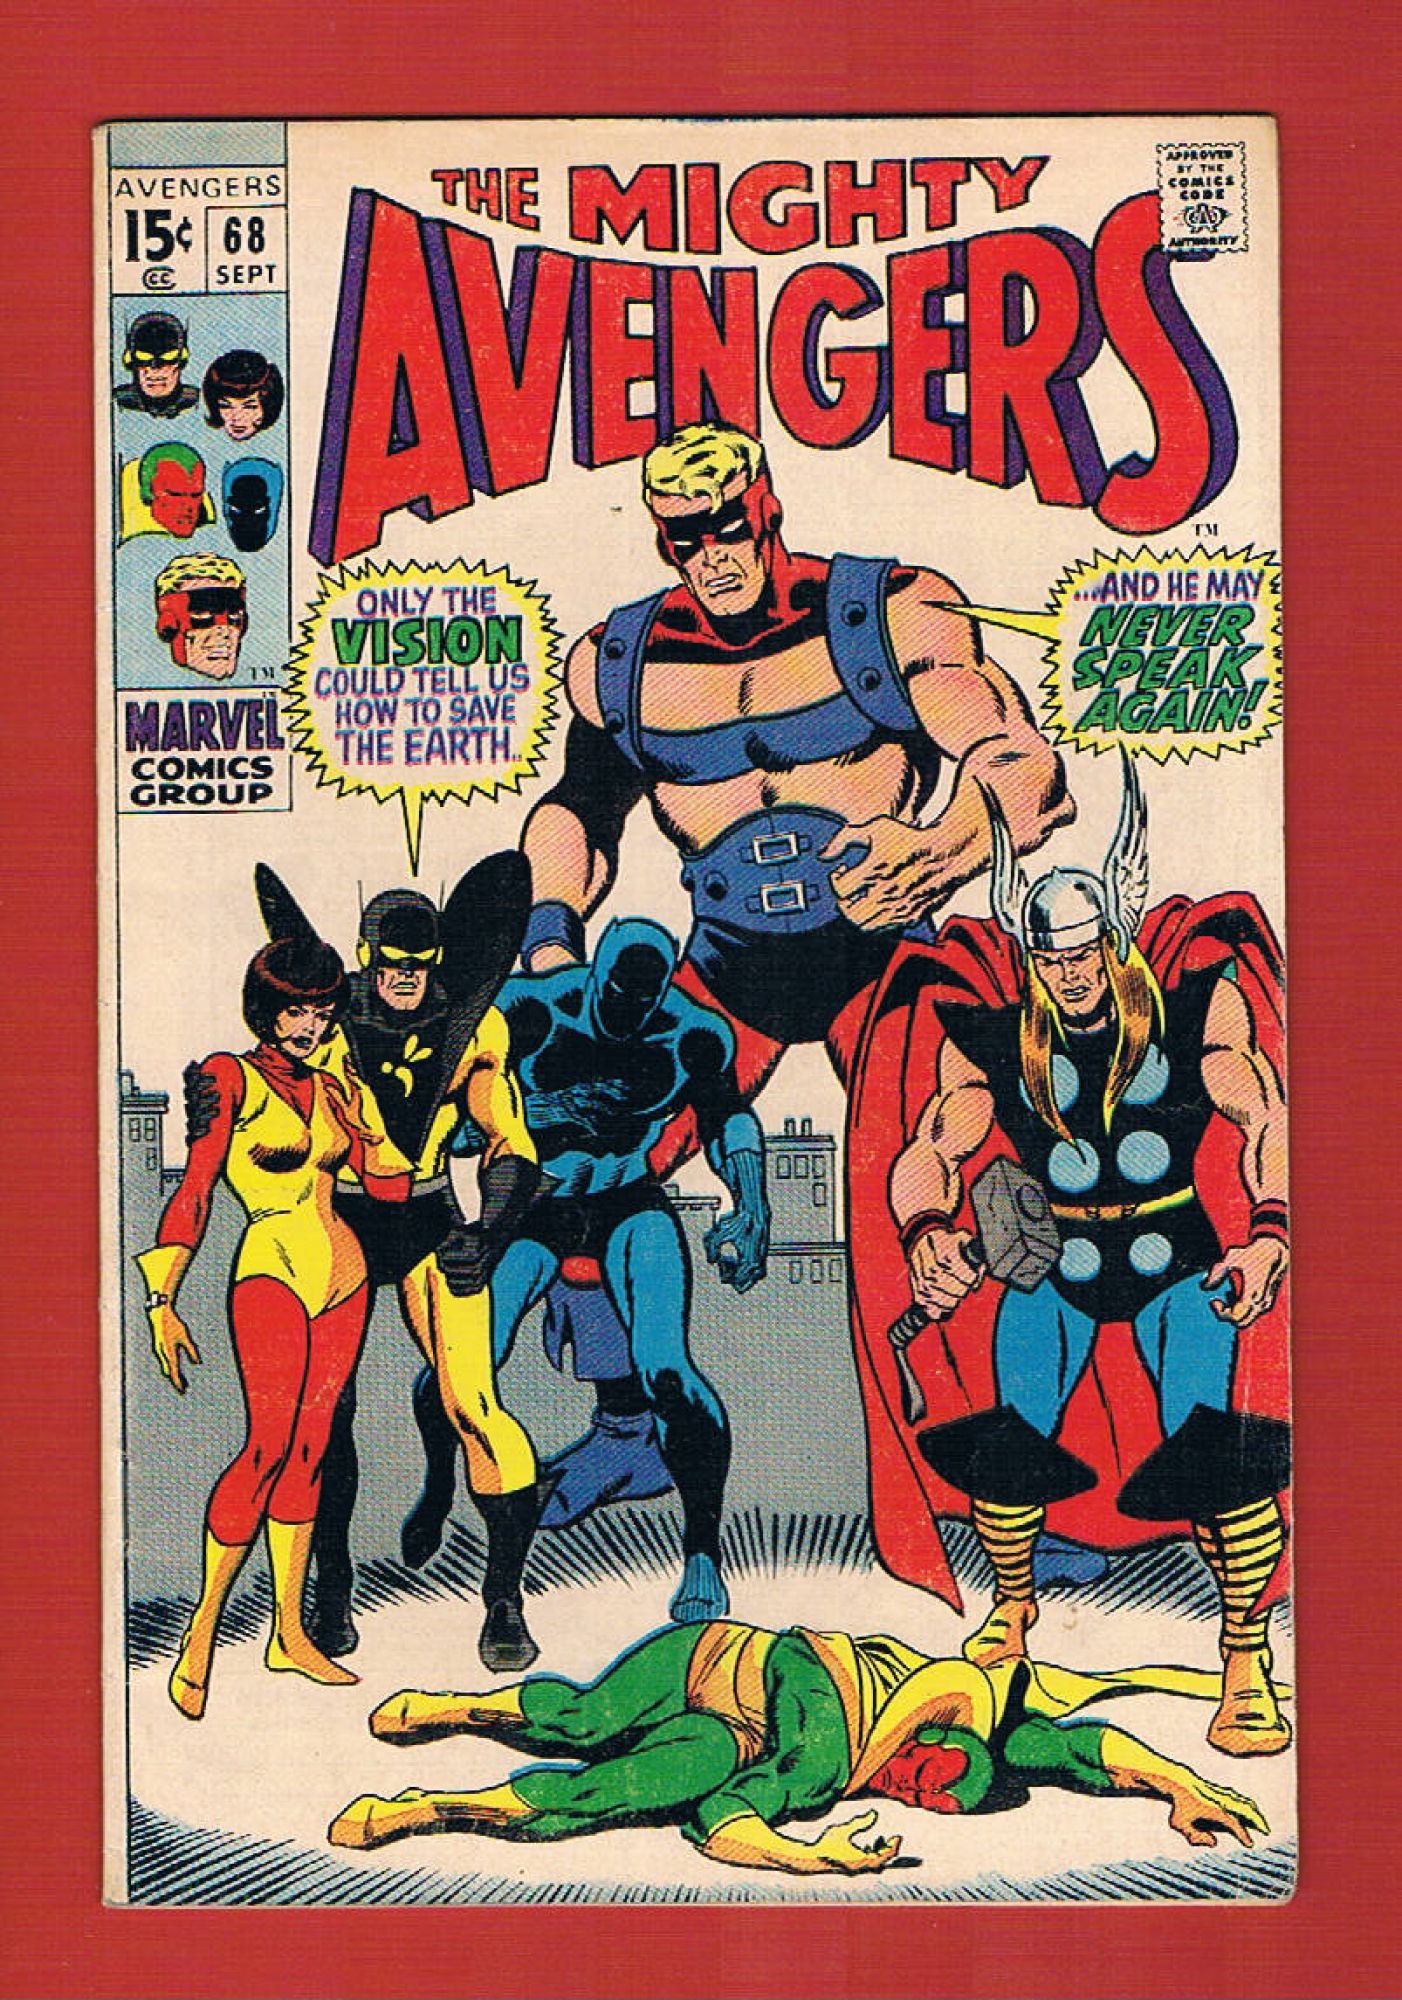 Avengers #68, Sep 1969, 7.0 FN/VF